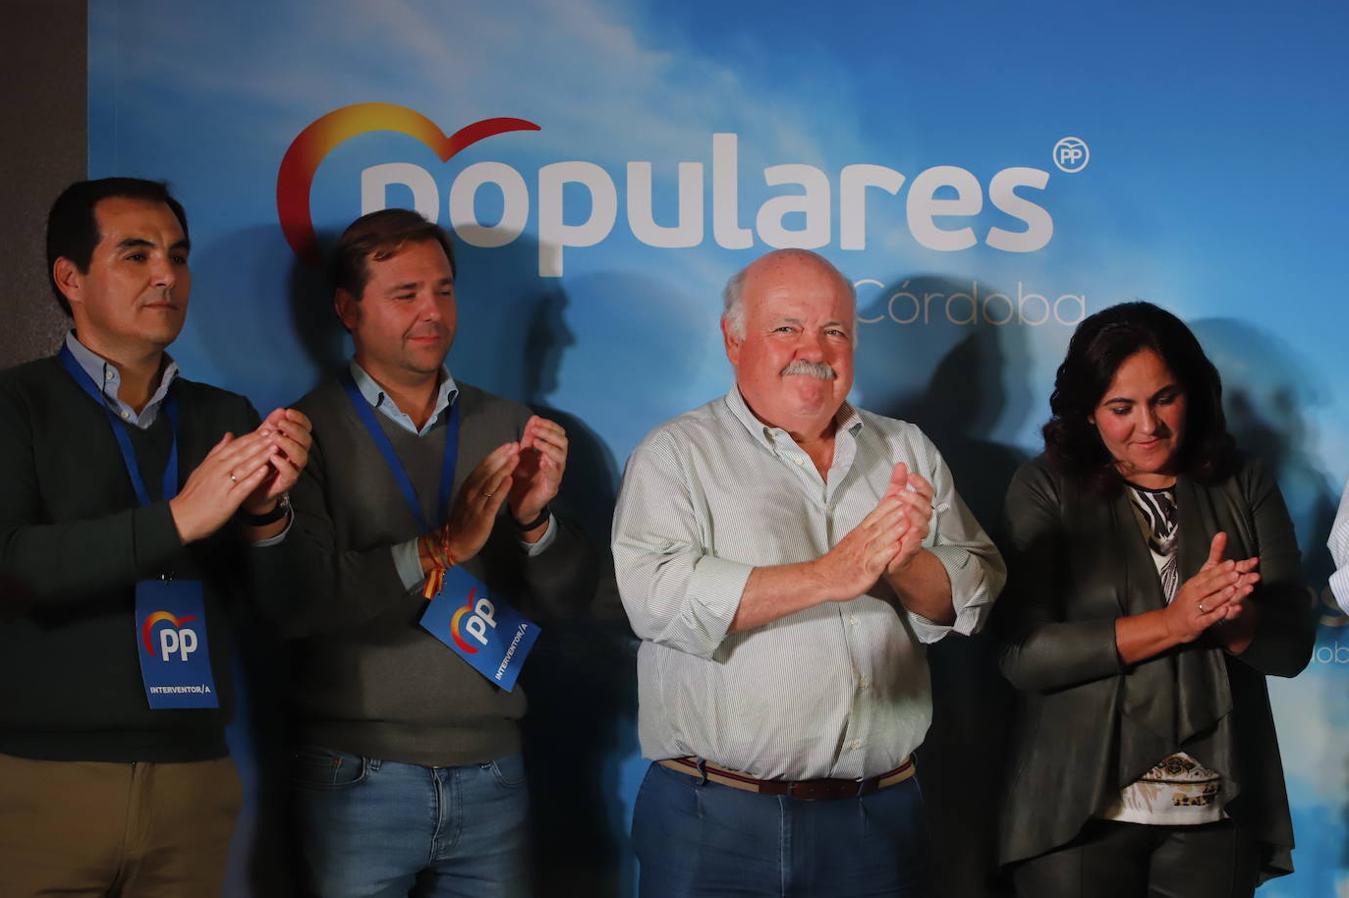 La noche de las elecciones en Córdoba  del PP, en imágenes